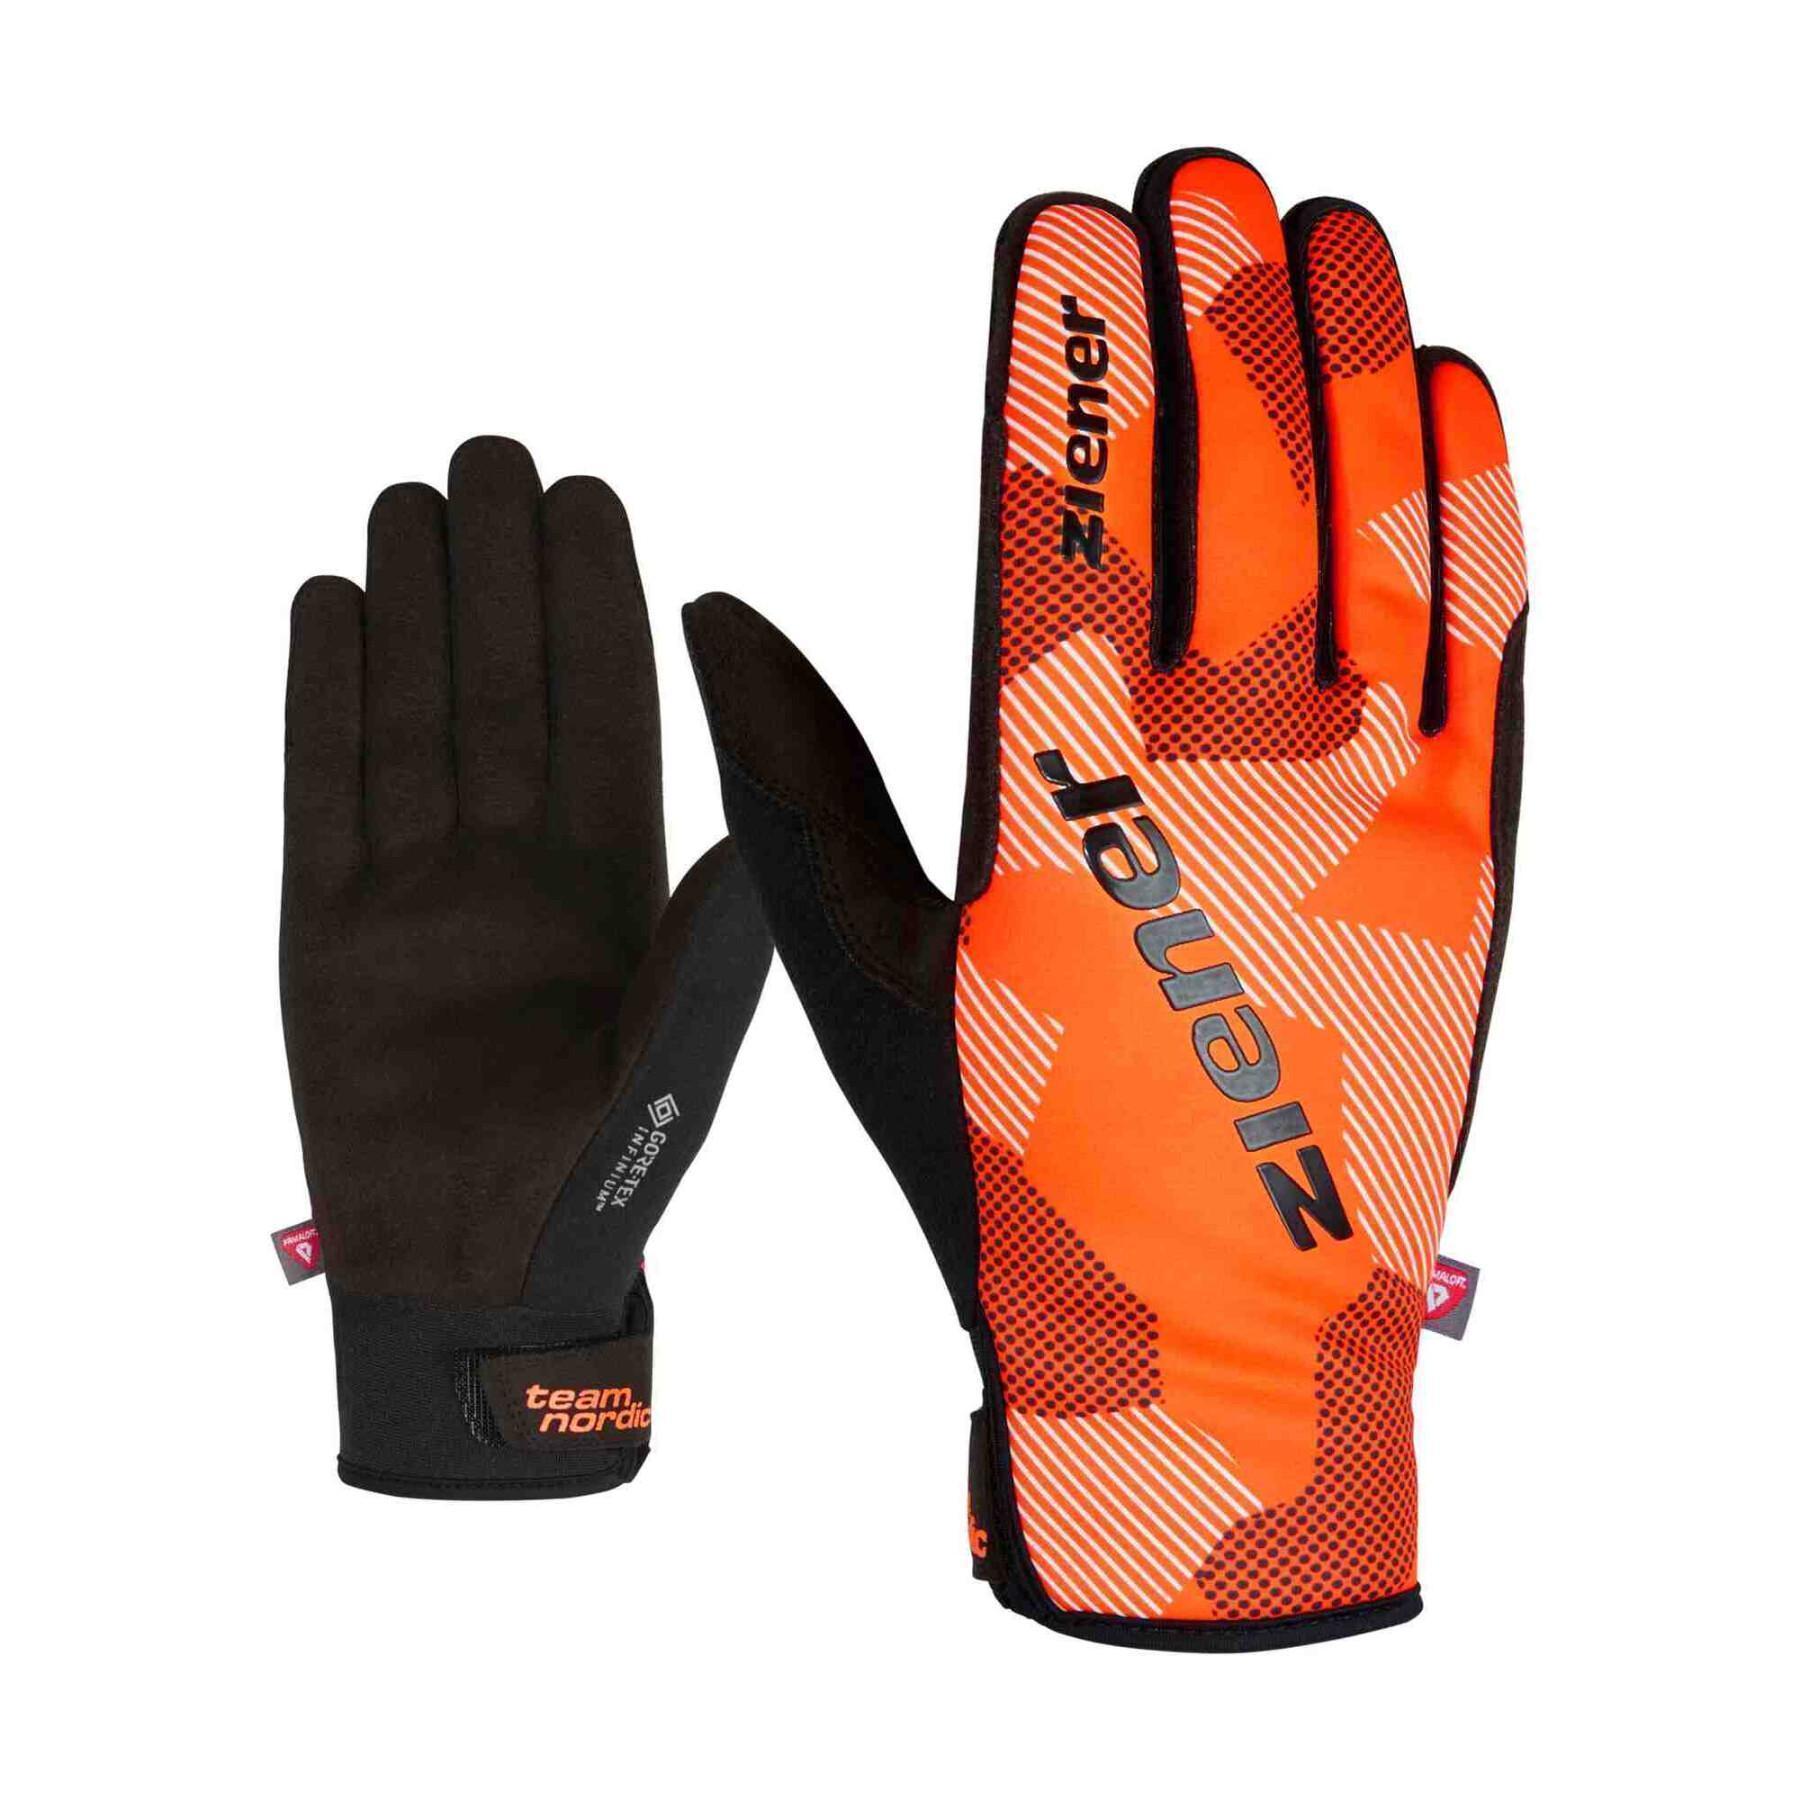 Ski gloves Ziener Umano WS PR - Textile - Winter Sports